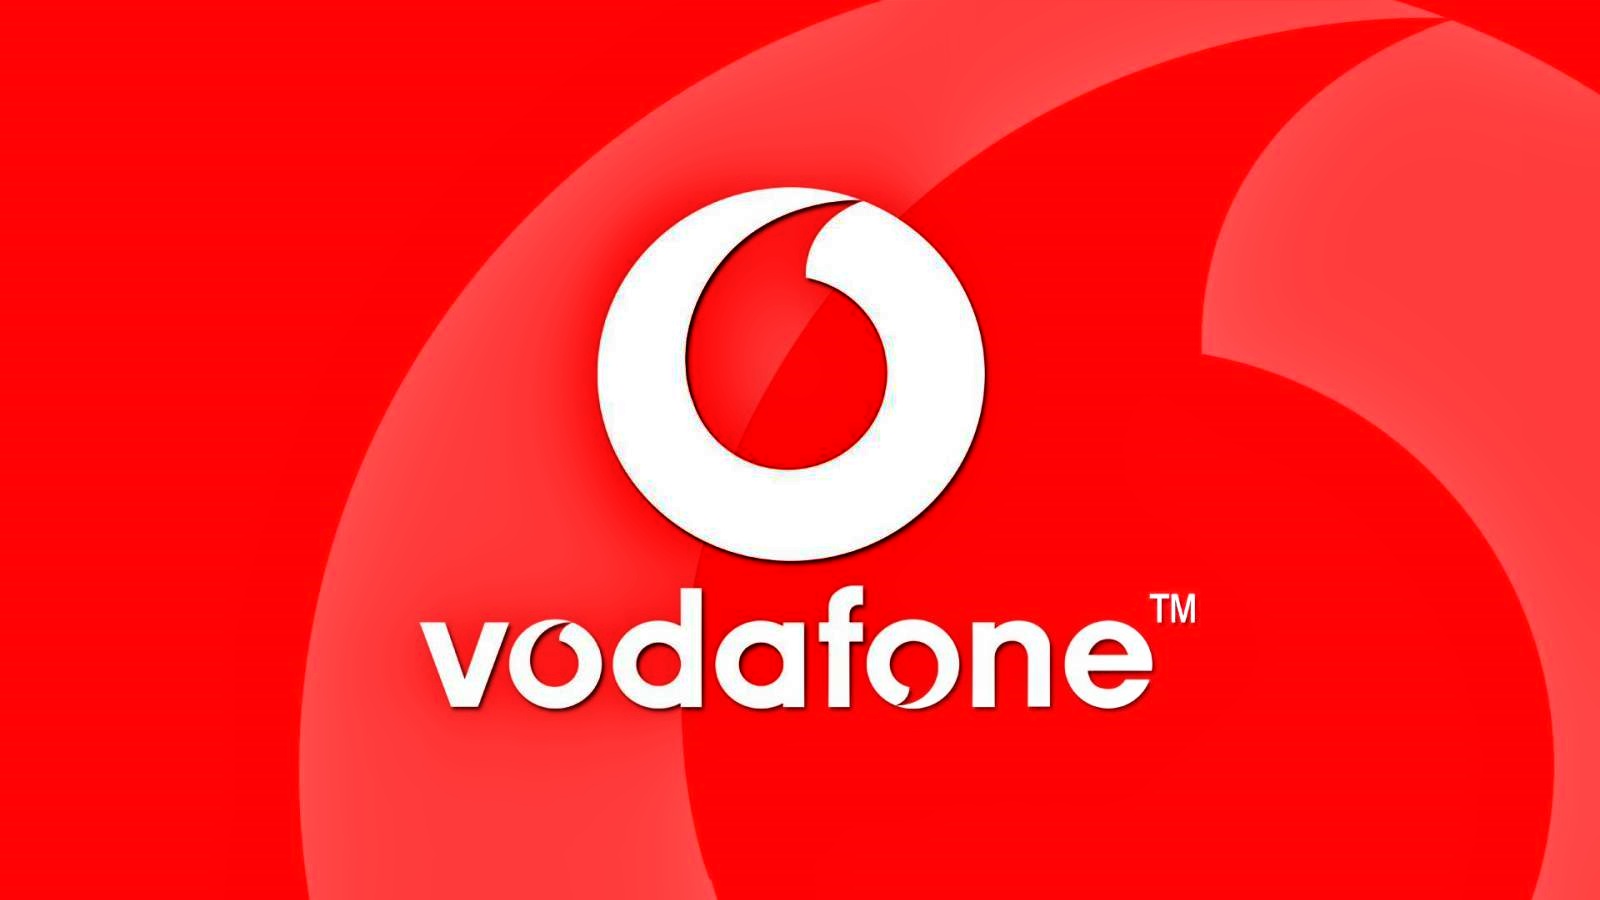 Vodafone Anuntul Oficial ULTIMA ORA MILIOANE Clienti Romani